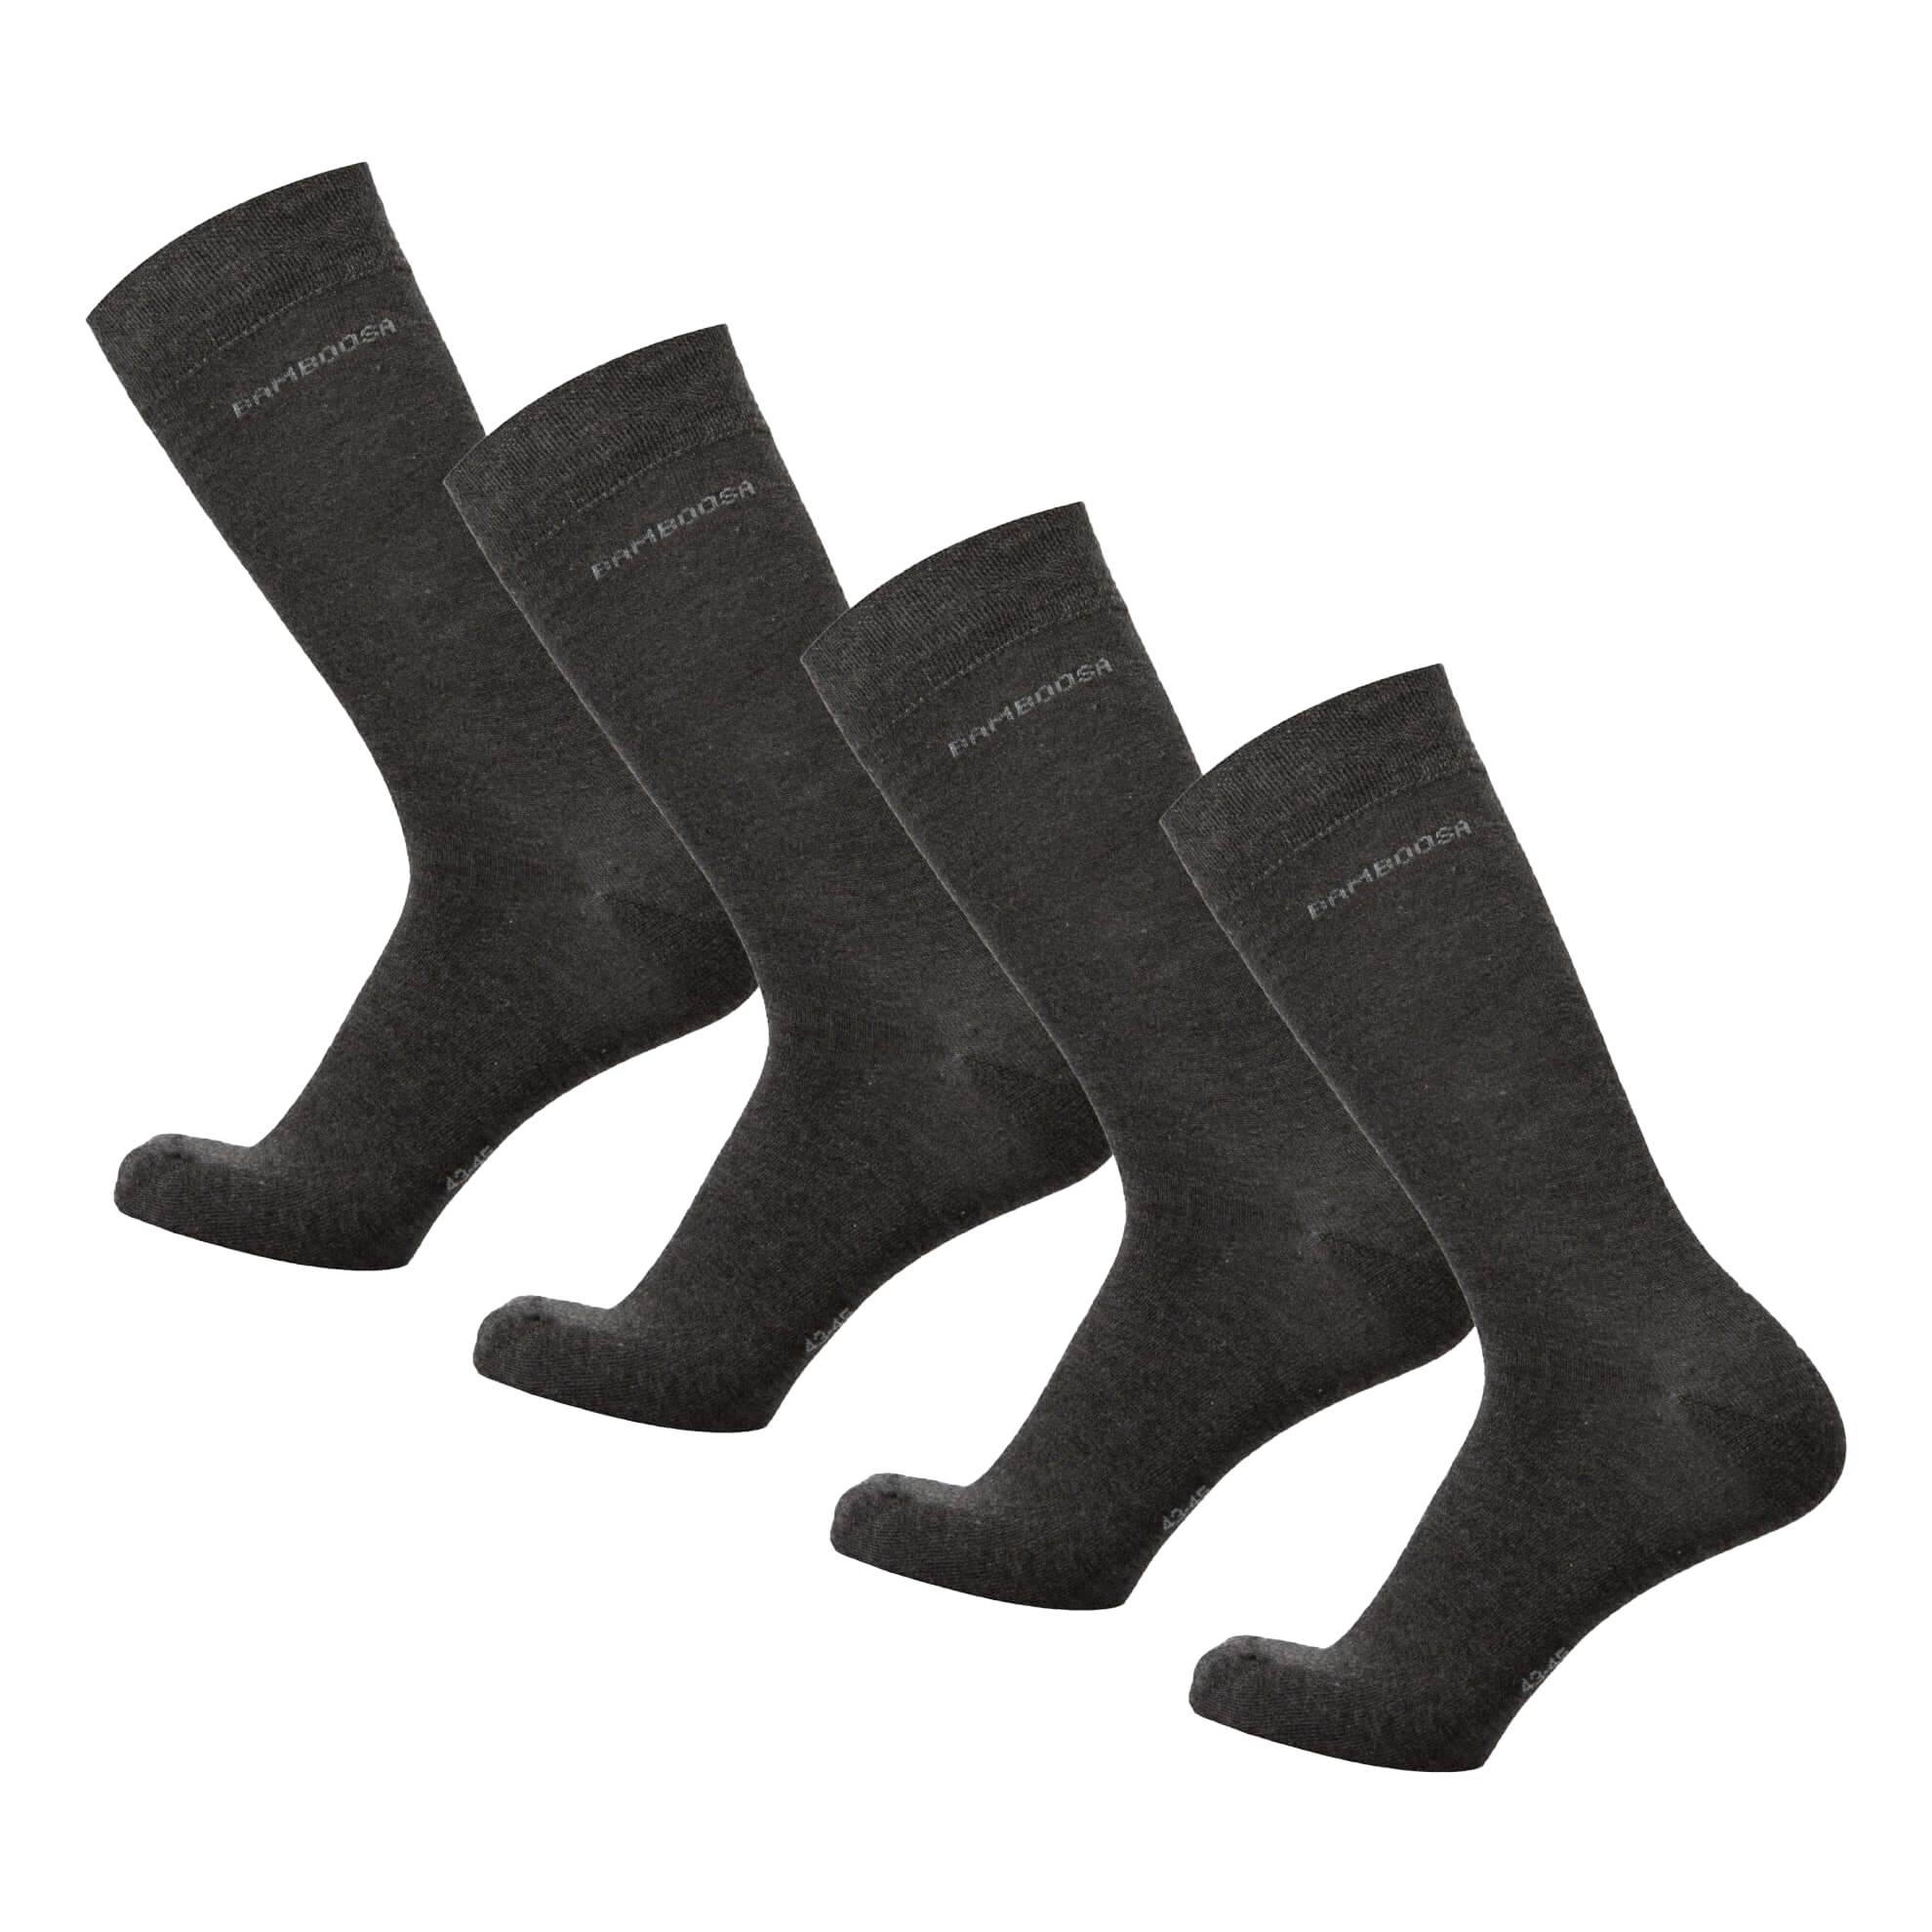 Bamboe sokken hoog grijs antraciet in 4-pack